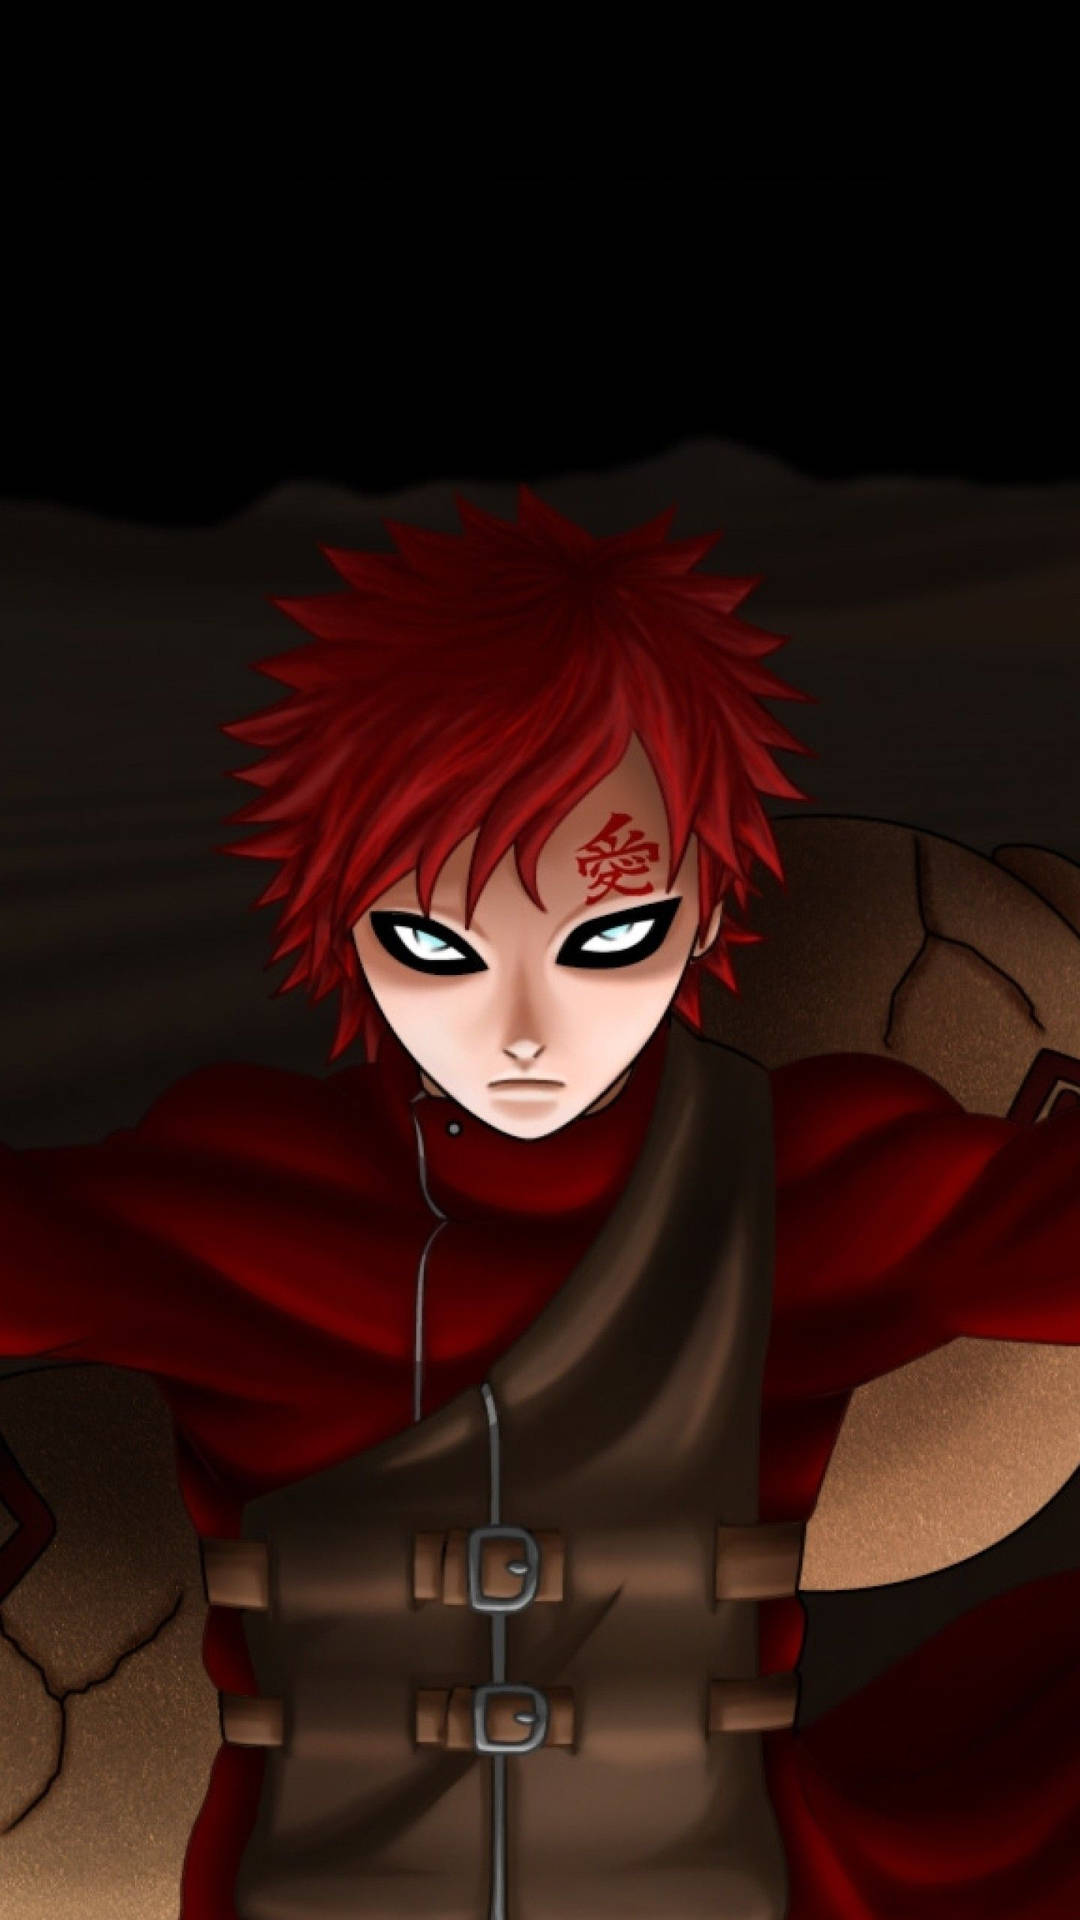 En rødhåret anime-karakter med et sværd Wallpaper